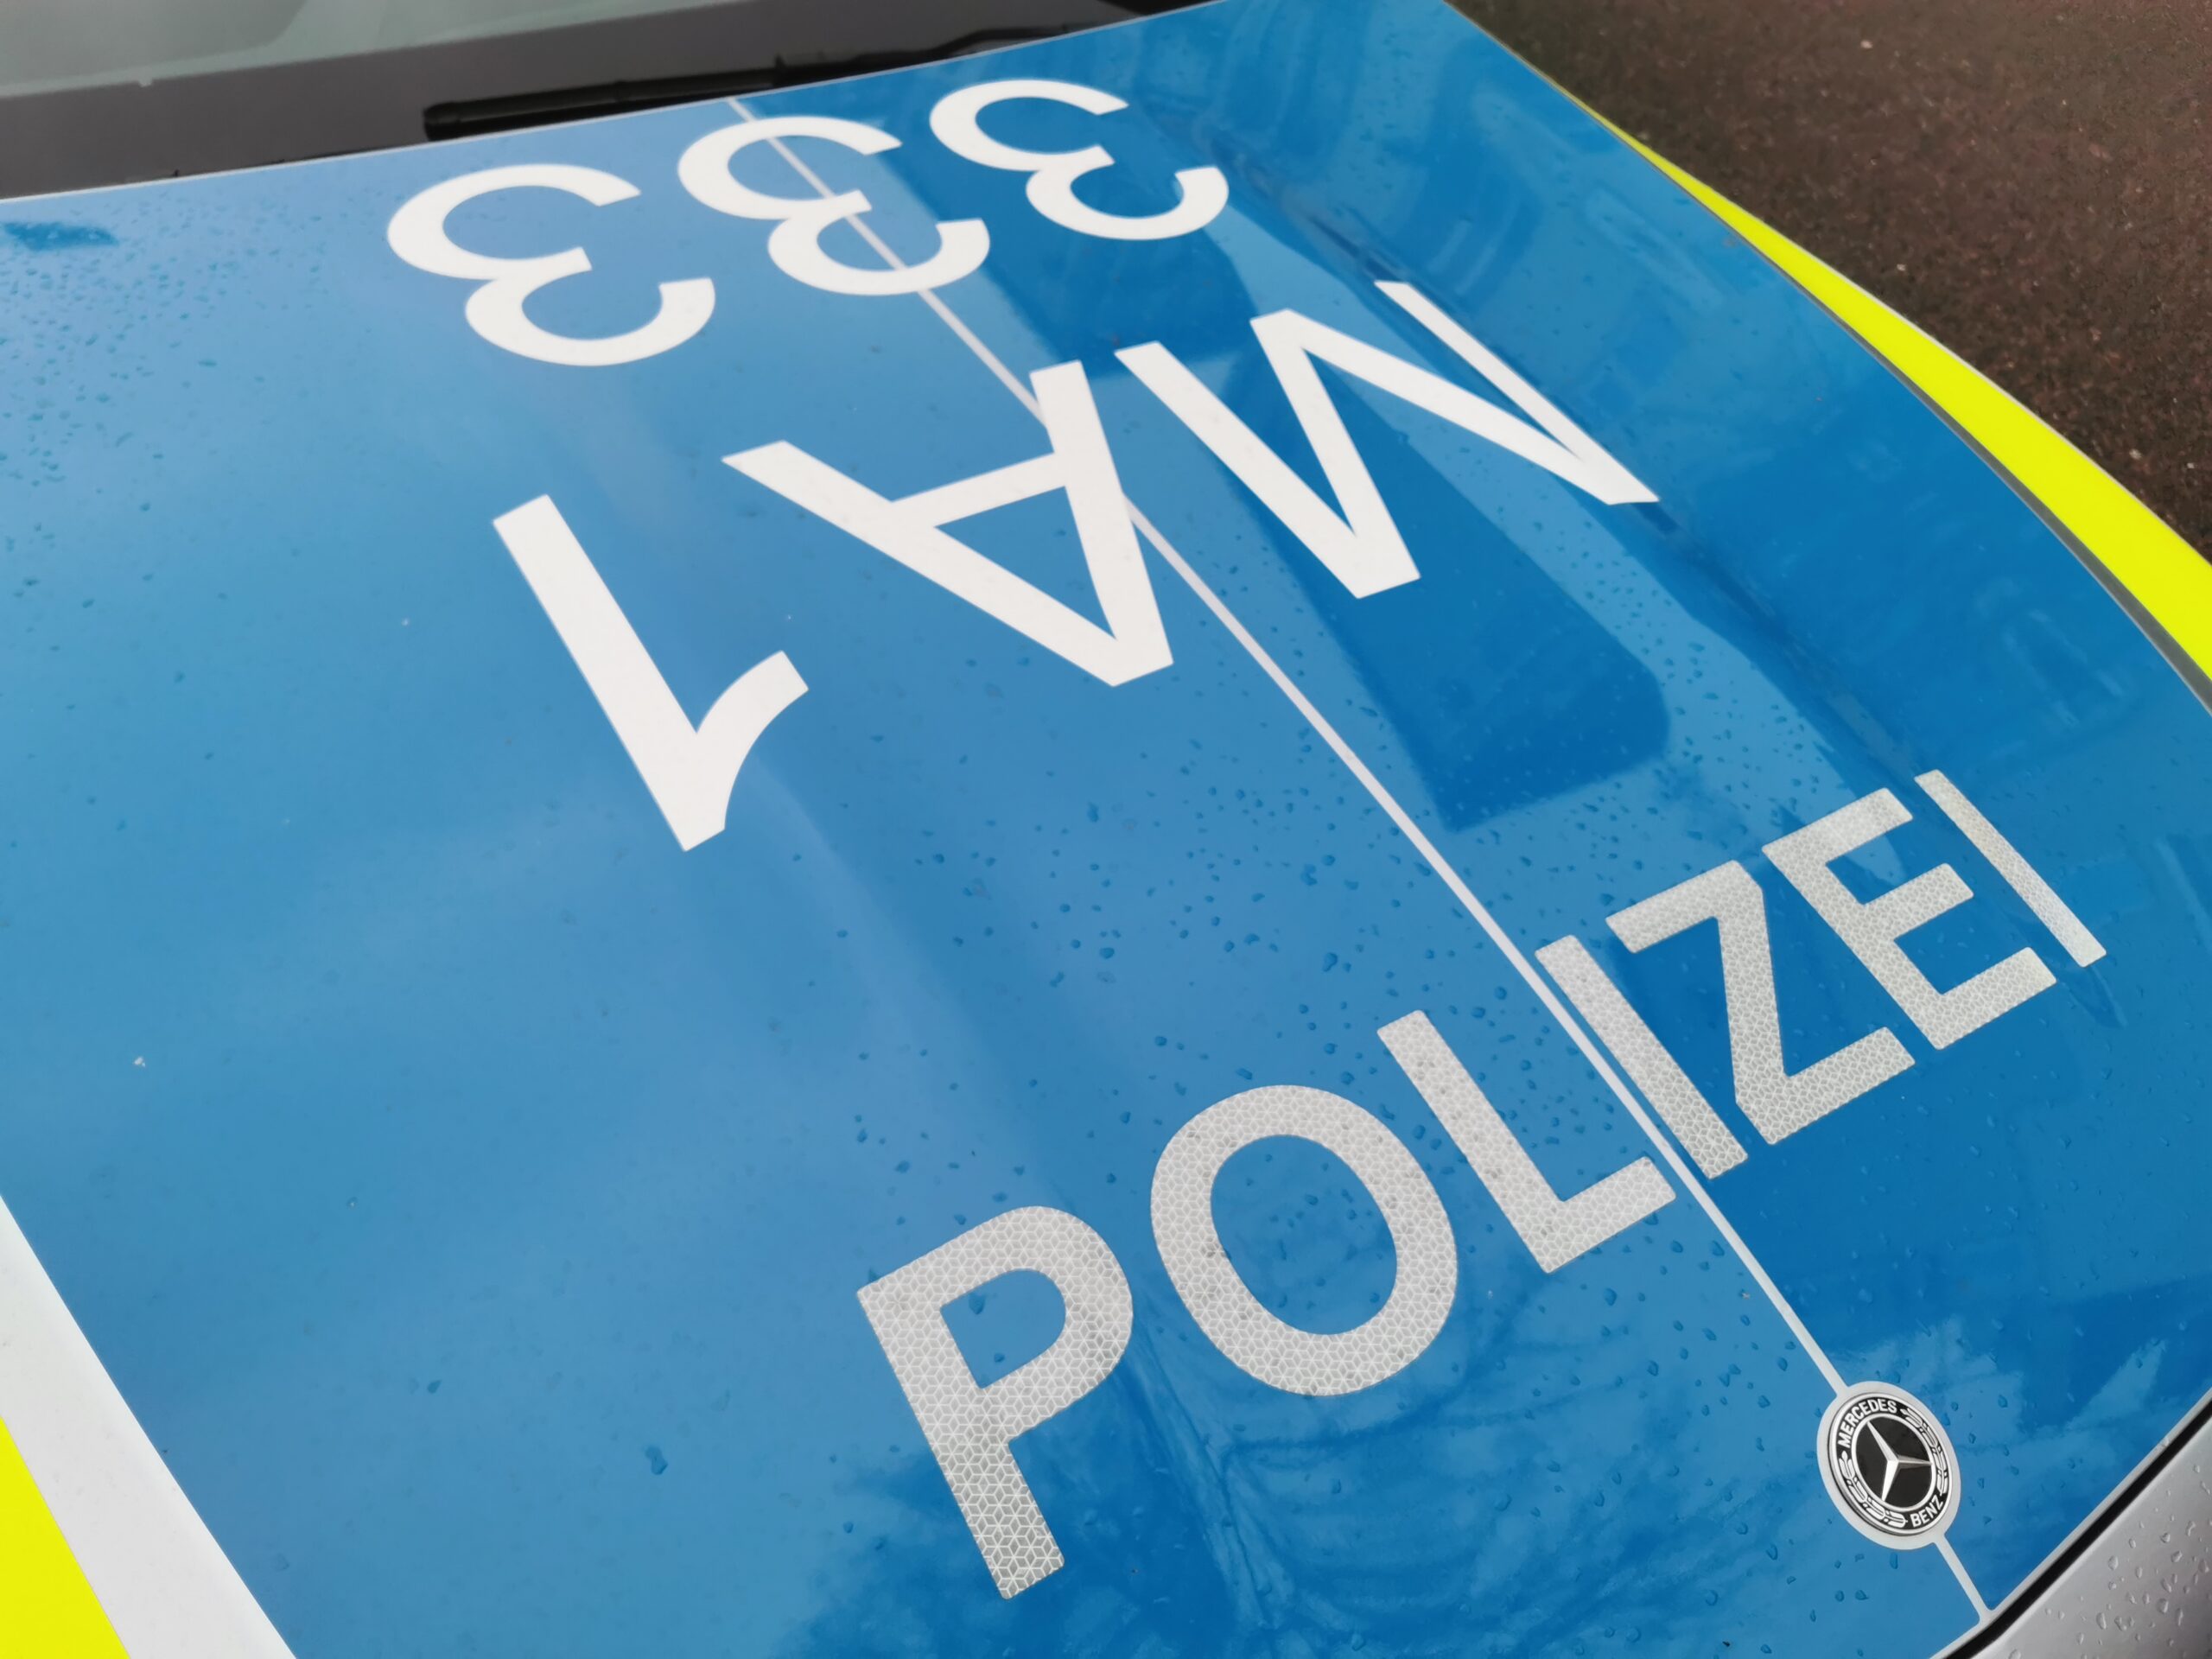 A6/Dielheim – Fahrzeugbrand auf der Autobahn (Update)